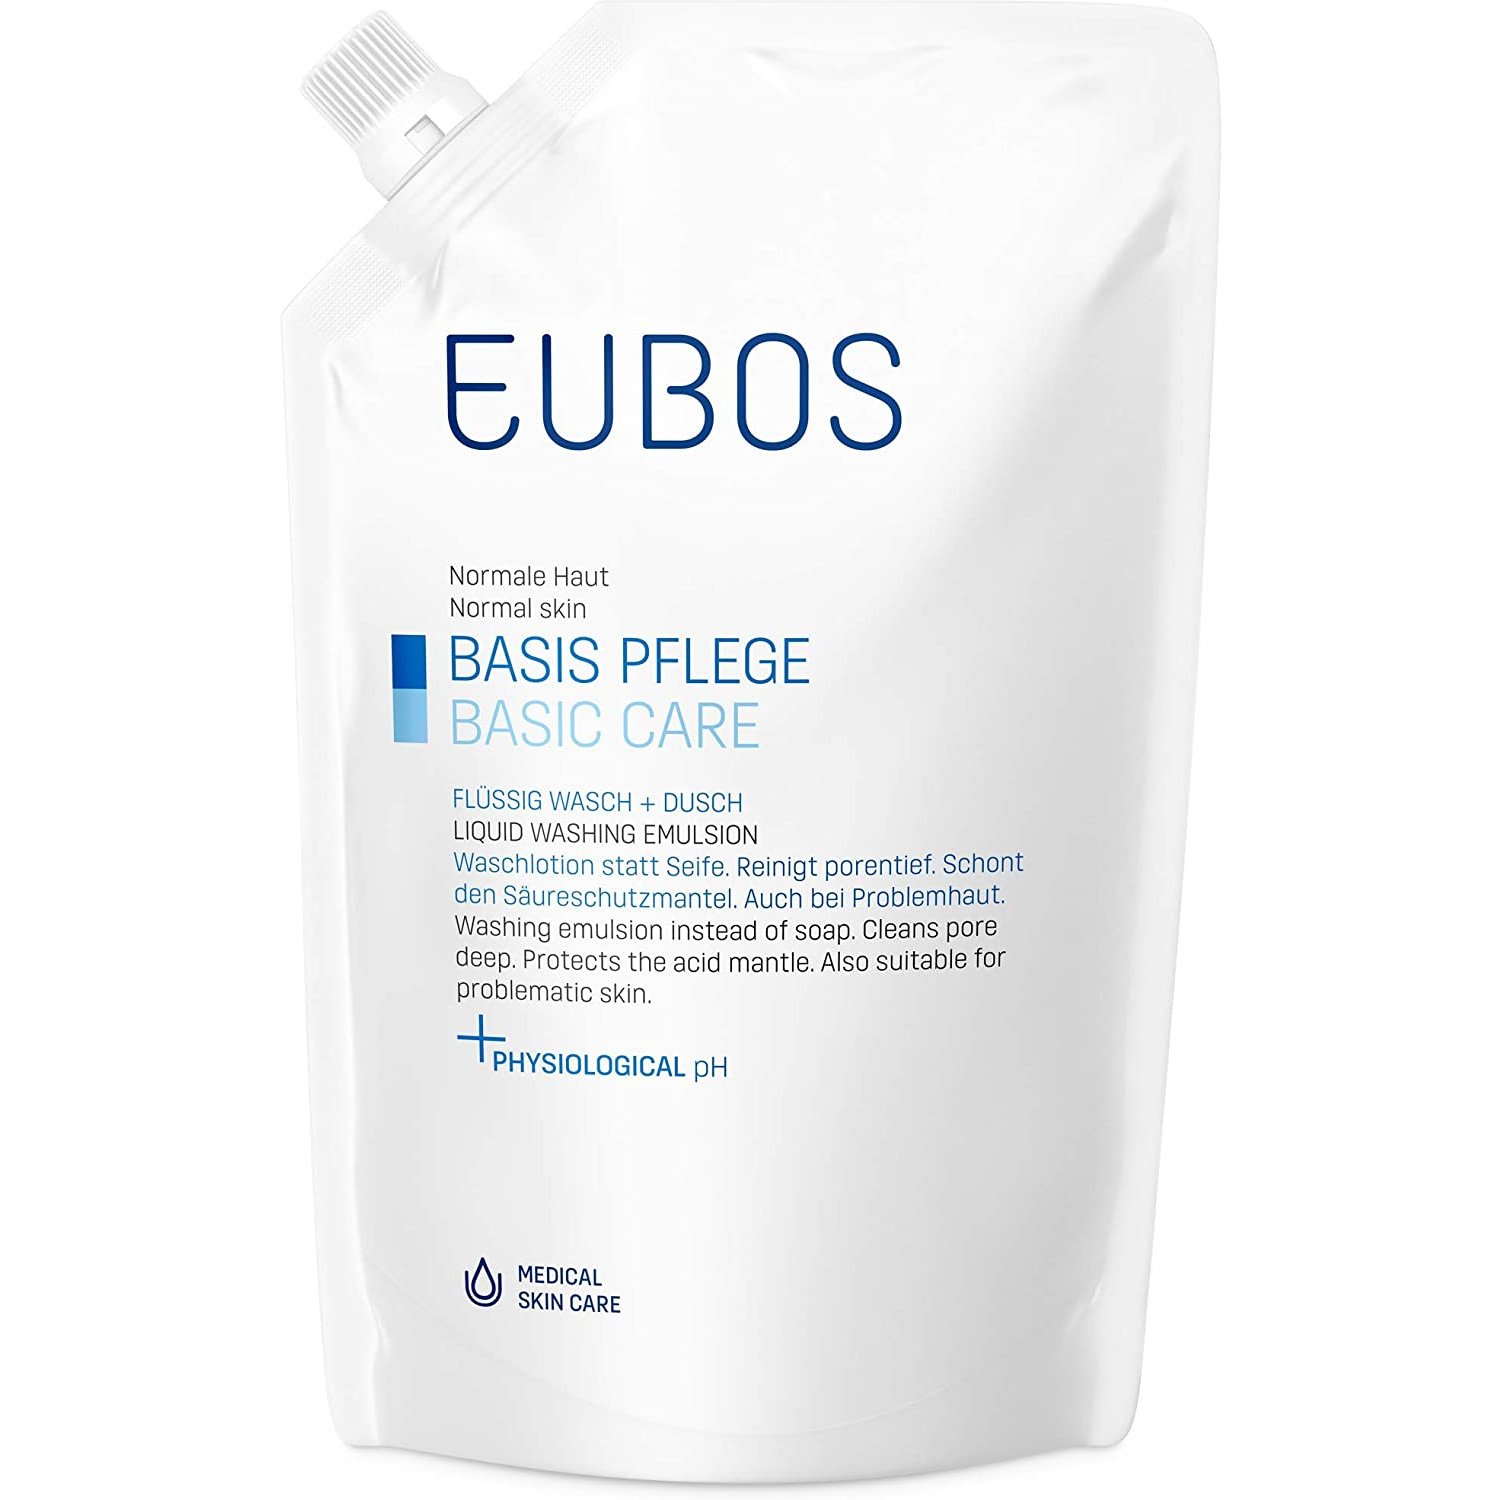 Eubos Basic Care Blue Liquid Washing Emulsion Υγρό Καθαρισμού για την Καθημερινή Περιποίηση Προσώπου & Σώματος – 400ml Refill